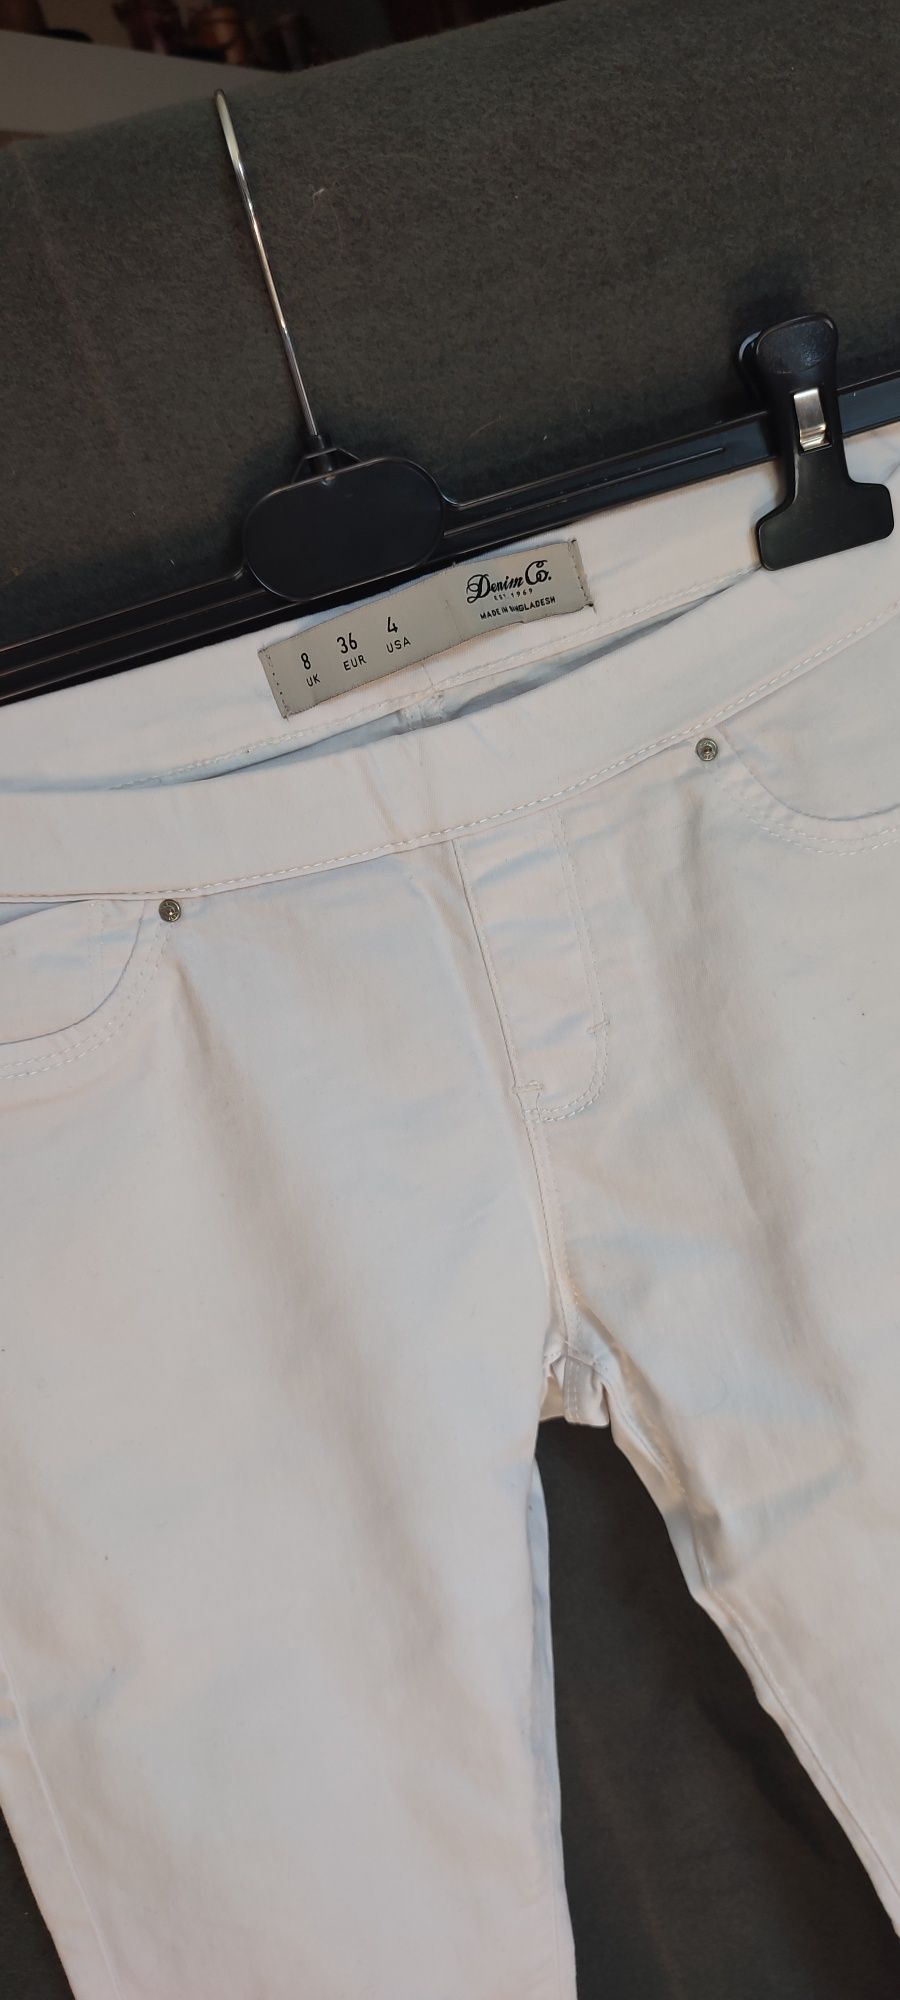 Jeansy rurki białe S 36 denim Co guma